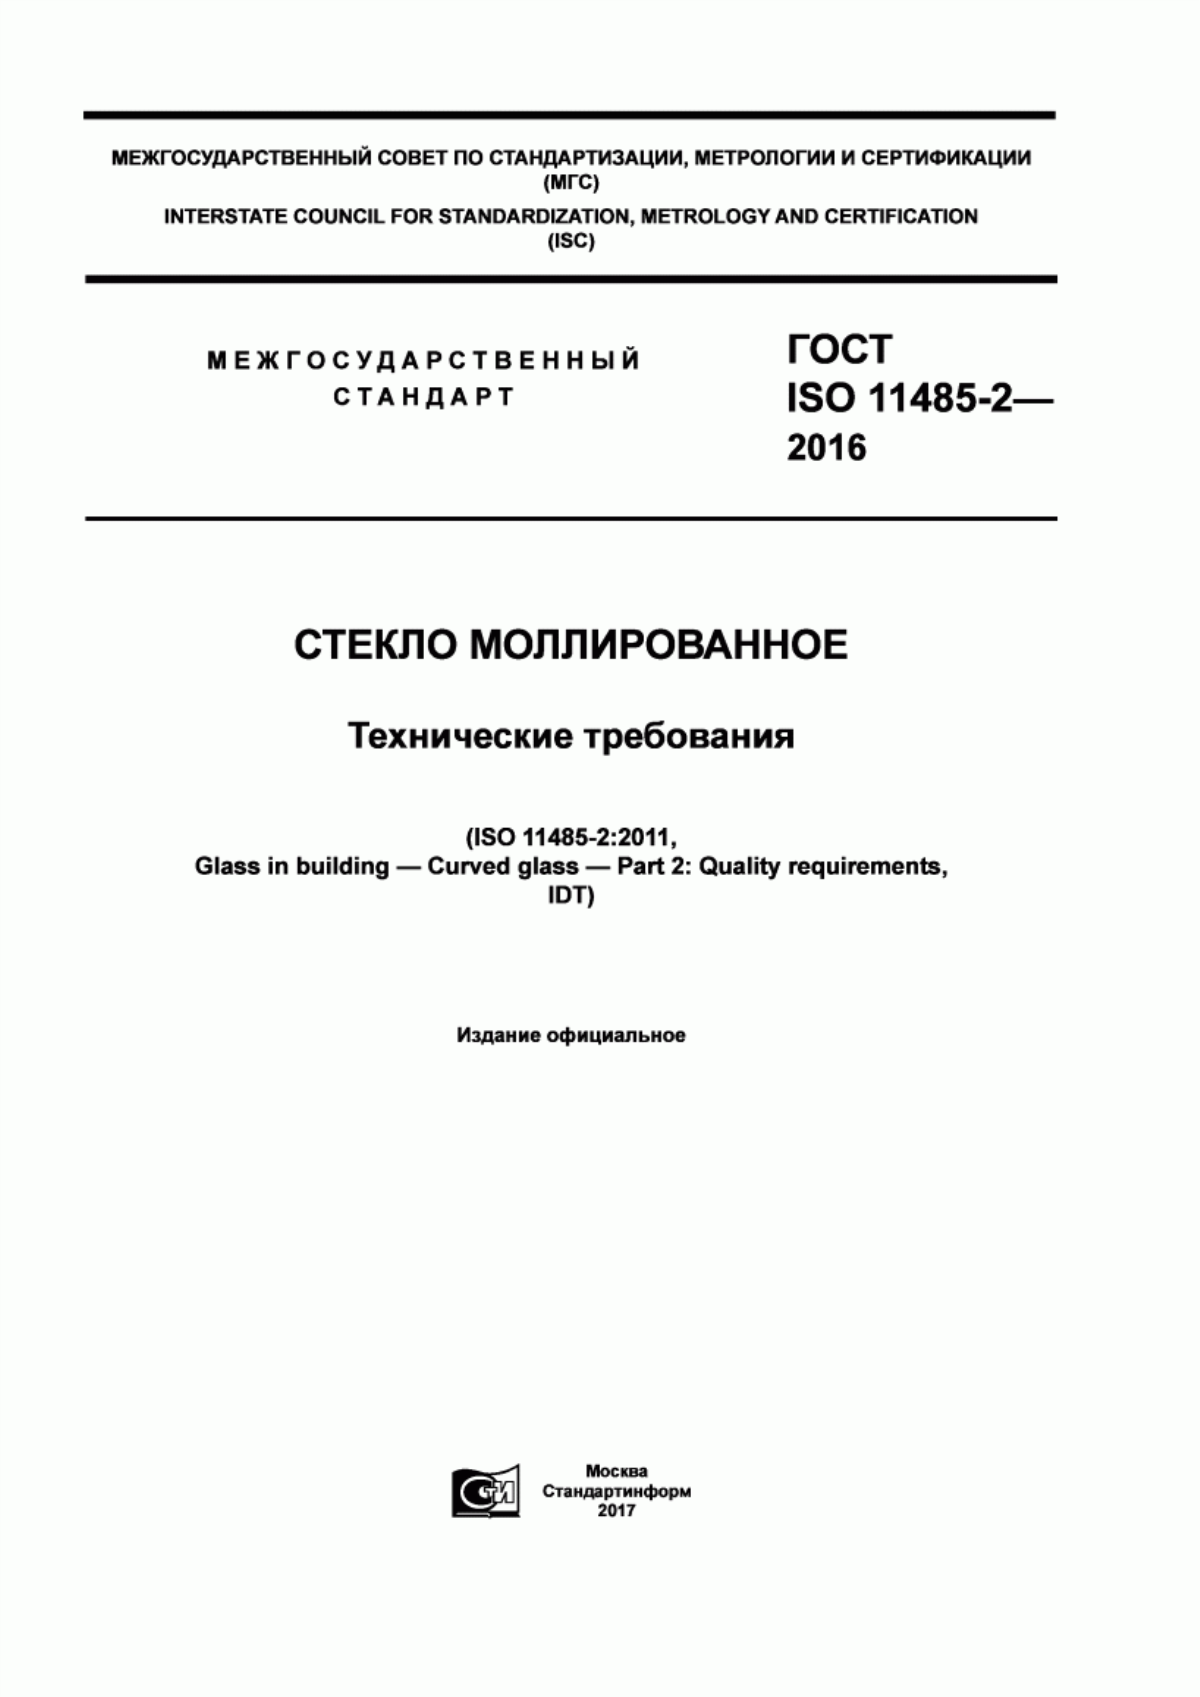 ГОСТ ISO 11485-2-2016 Стекло моллированное. Технические требования